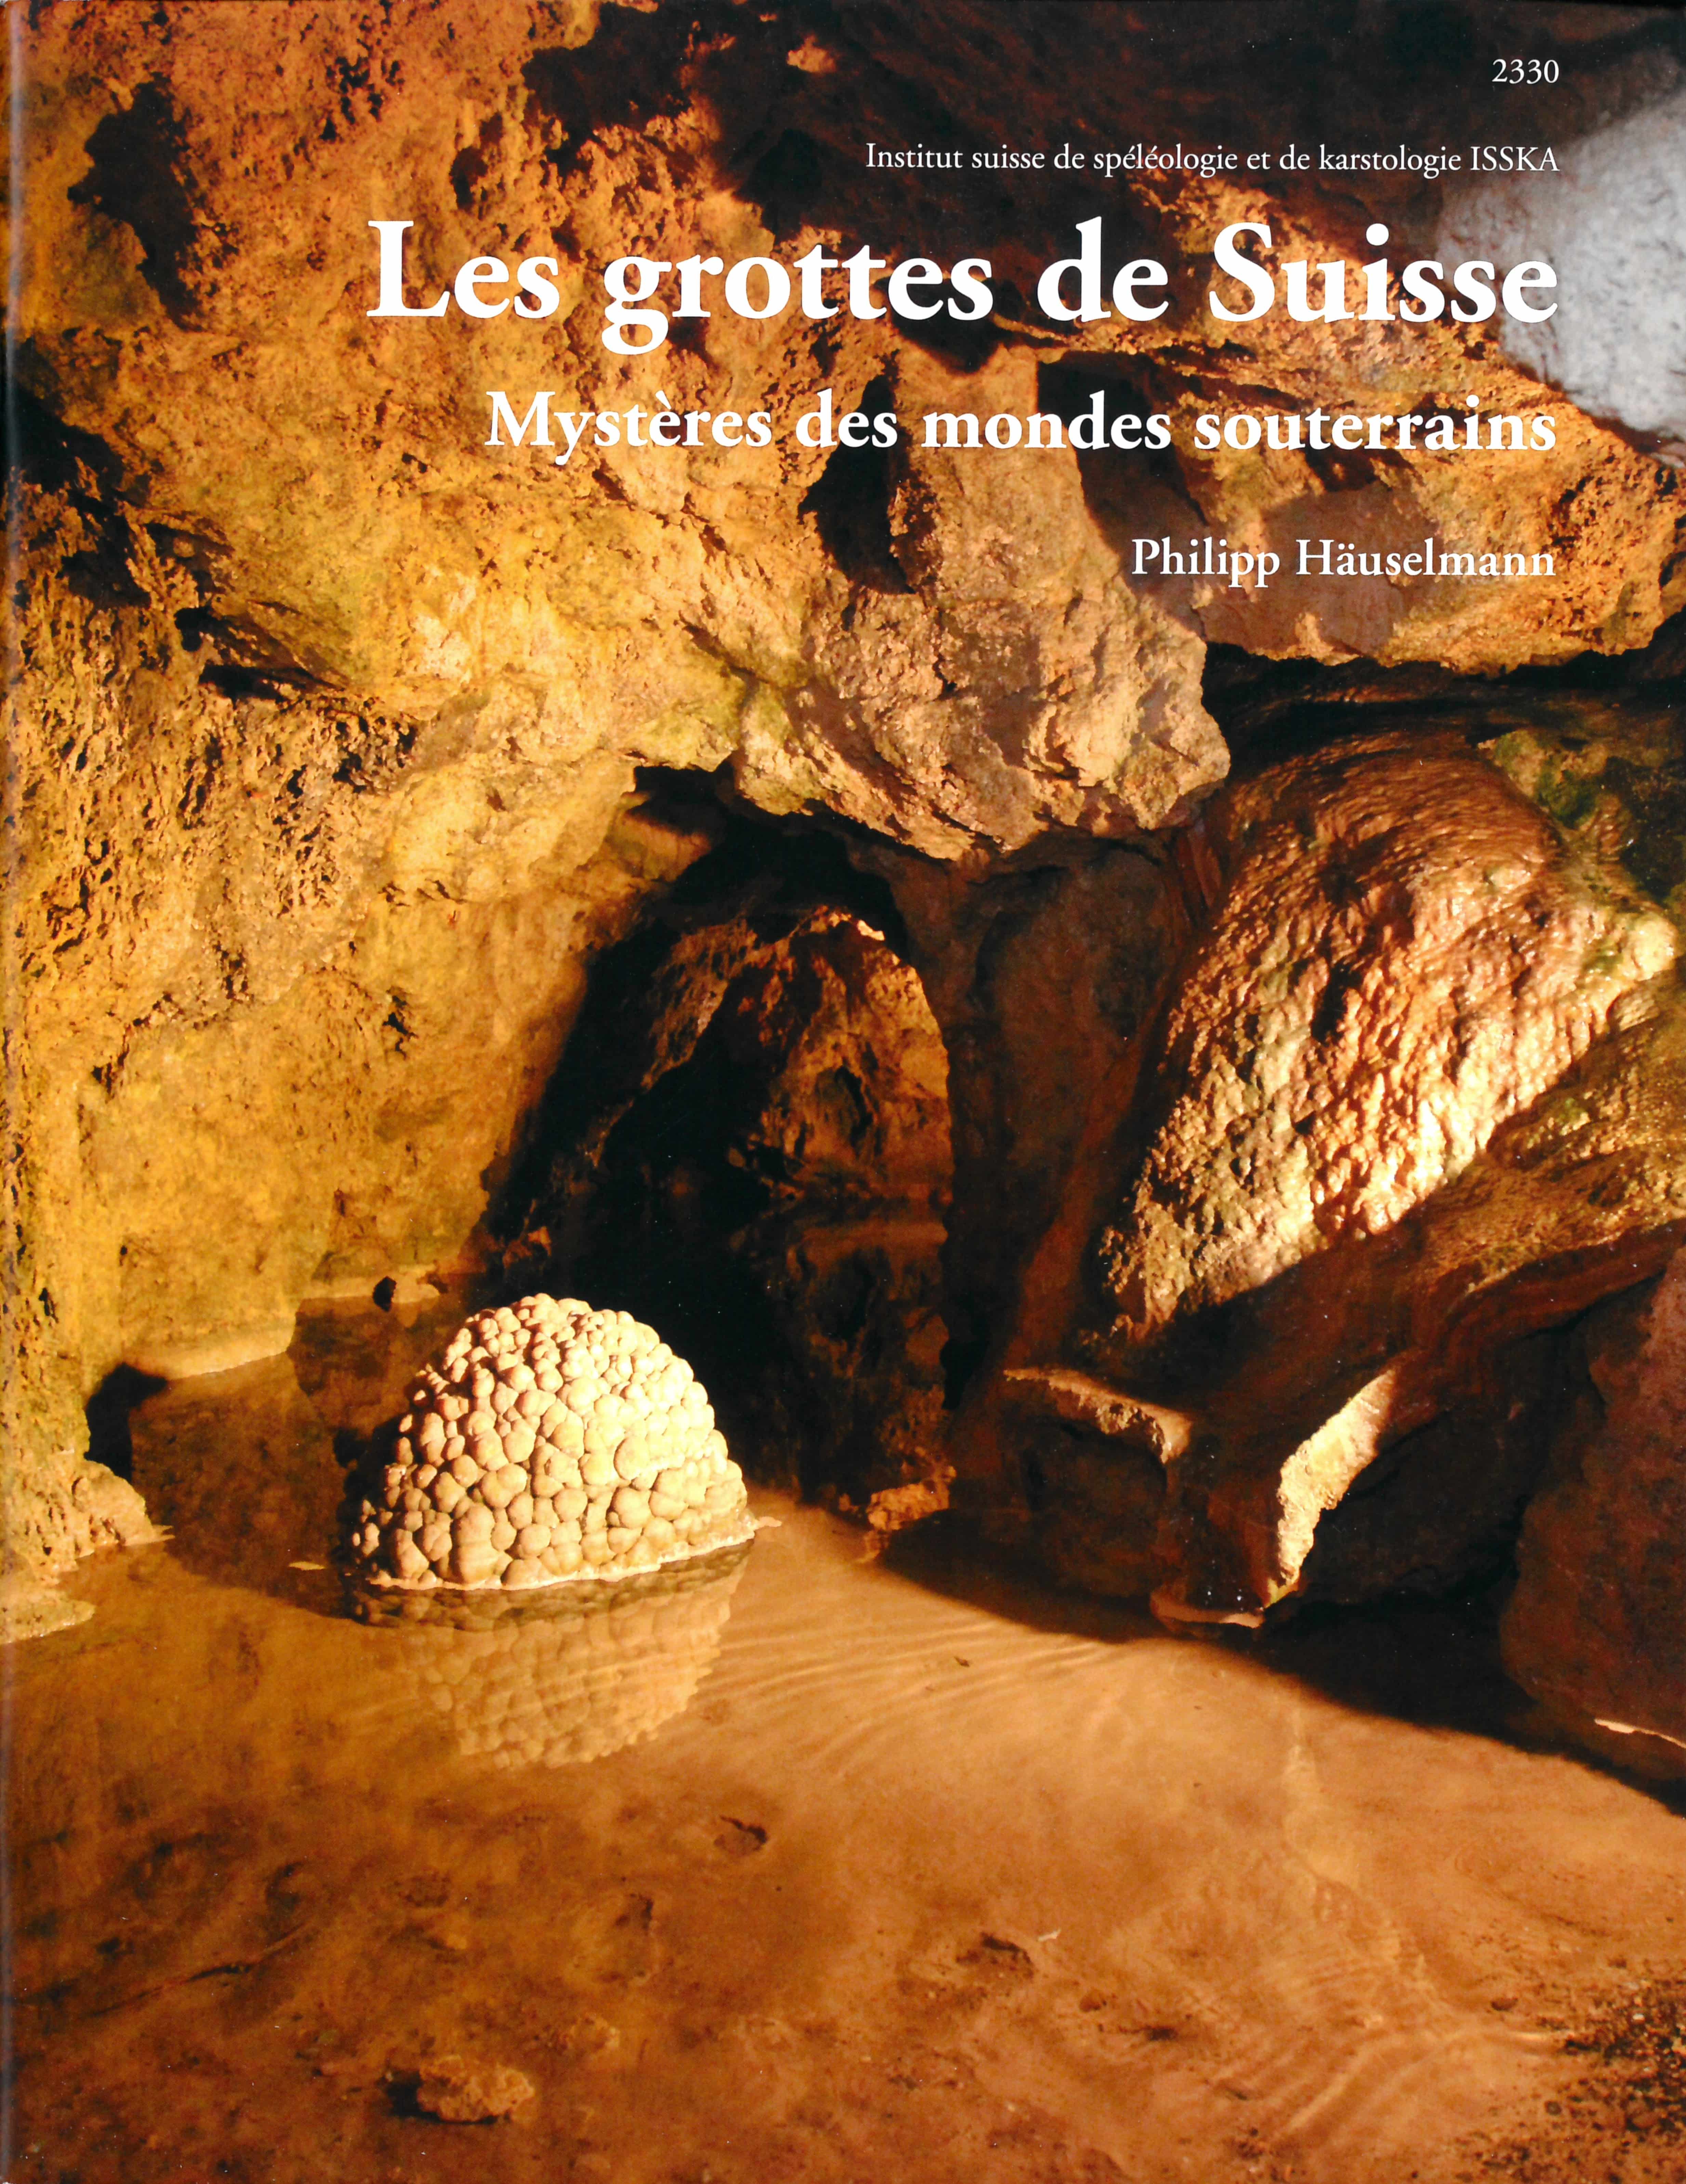 Les grottes de Suisse, un livre de Philipp Haeuselmann, ISSKA Institut suisse de spéléologie et de karstologie, éditions OSL